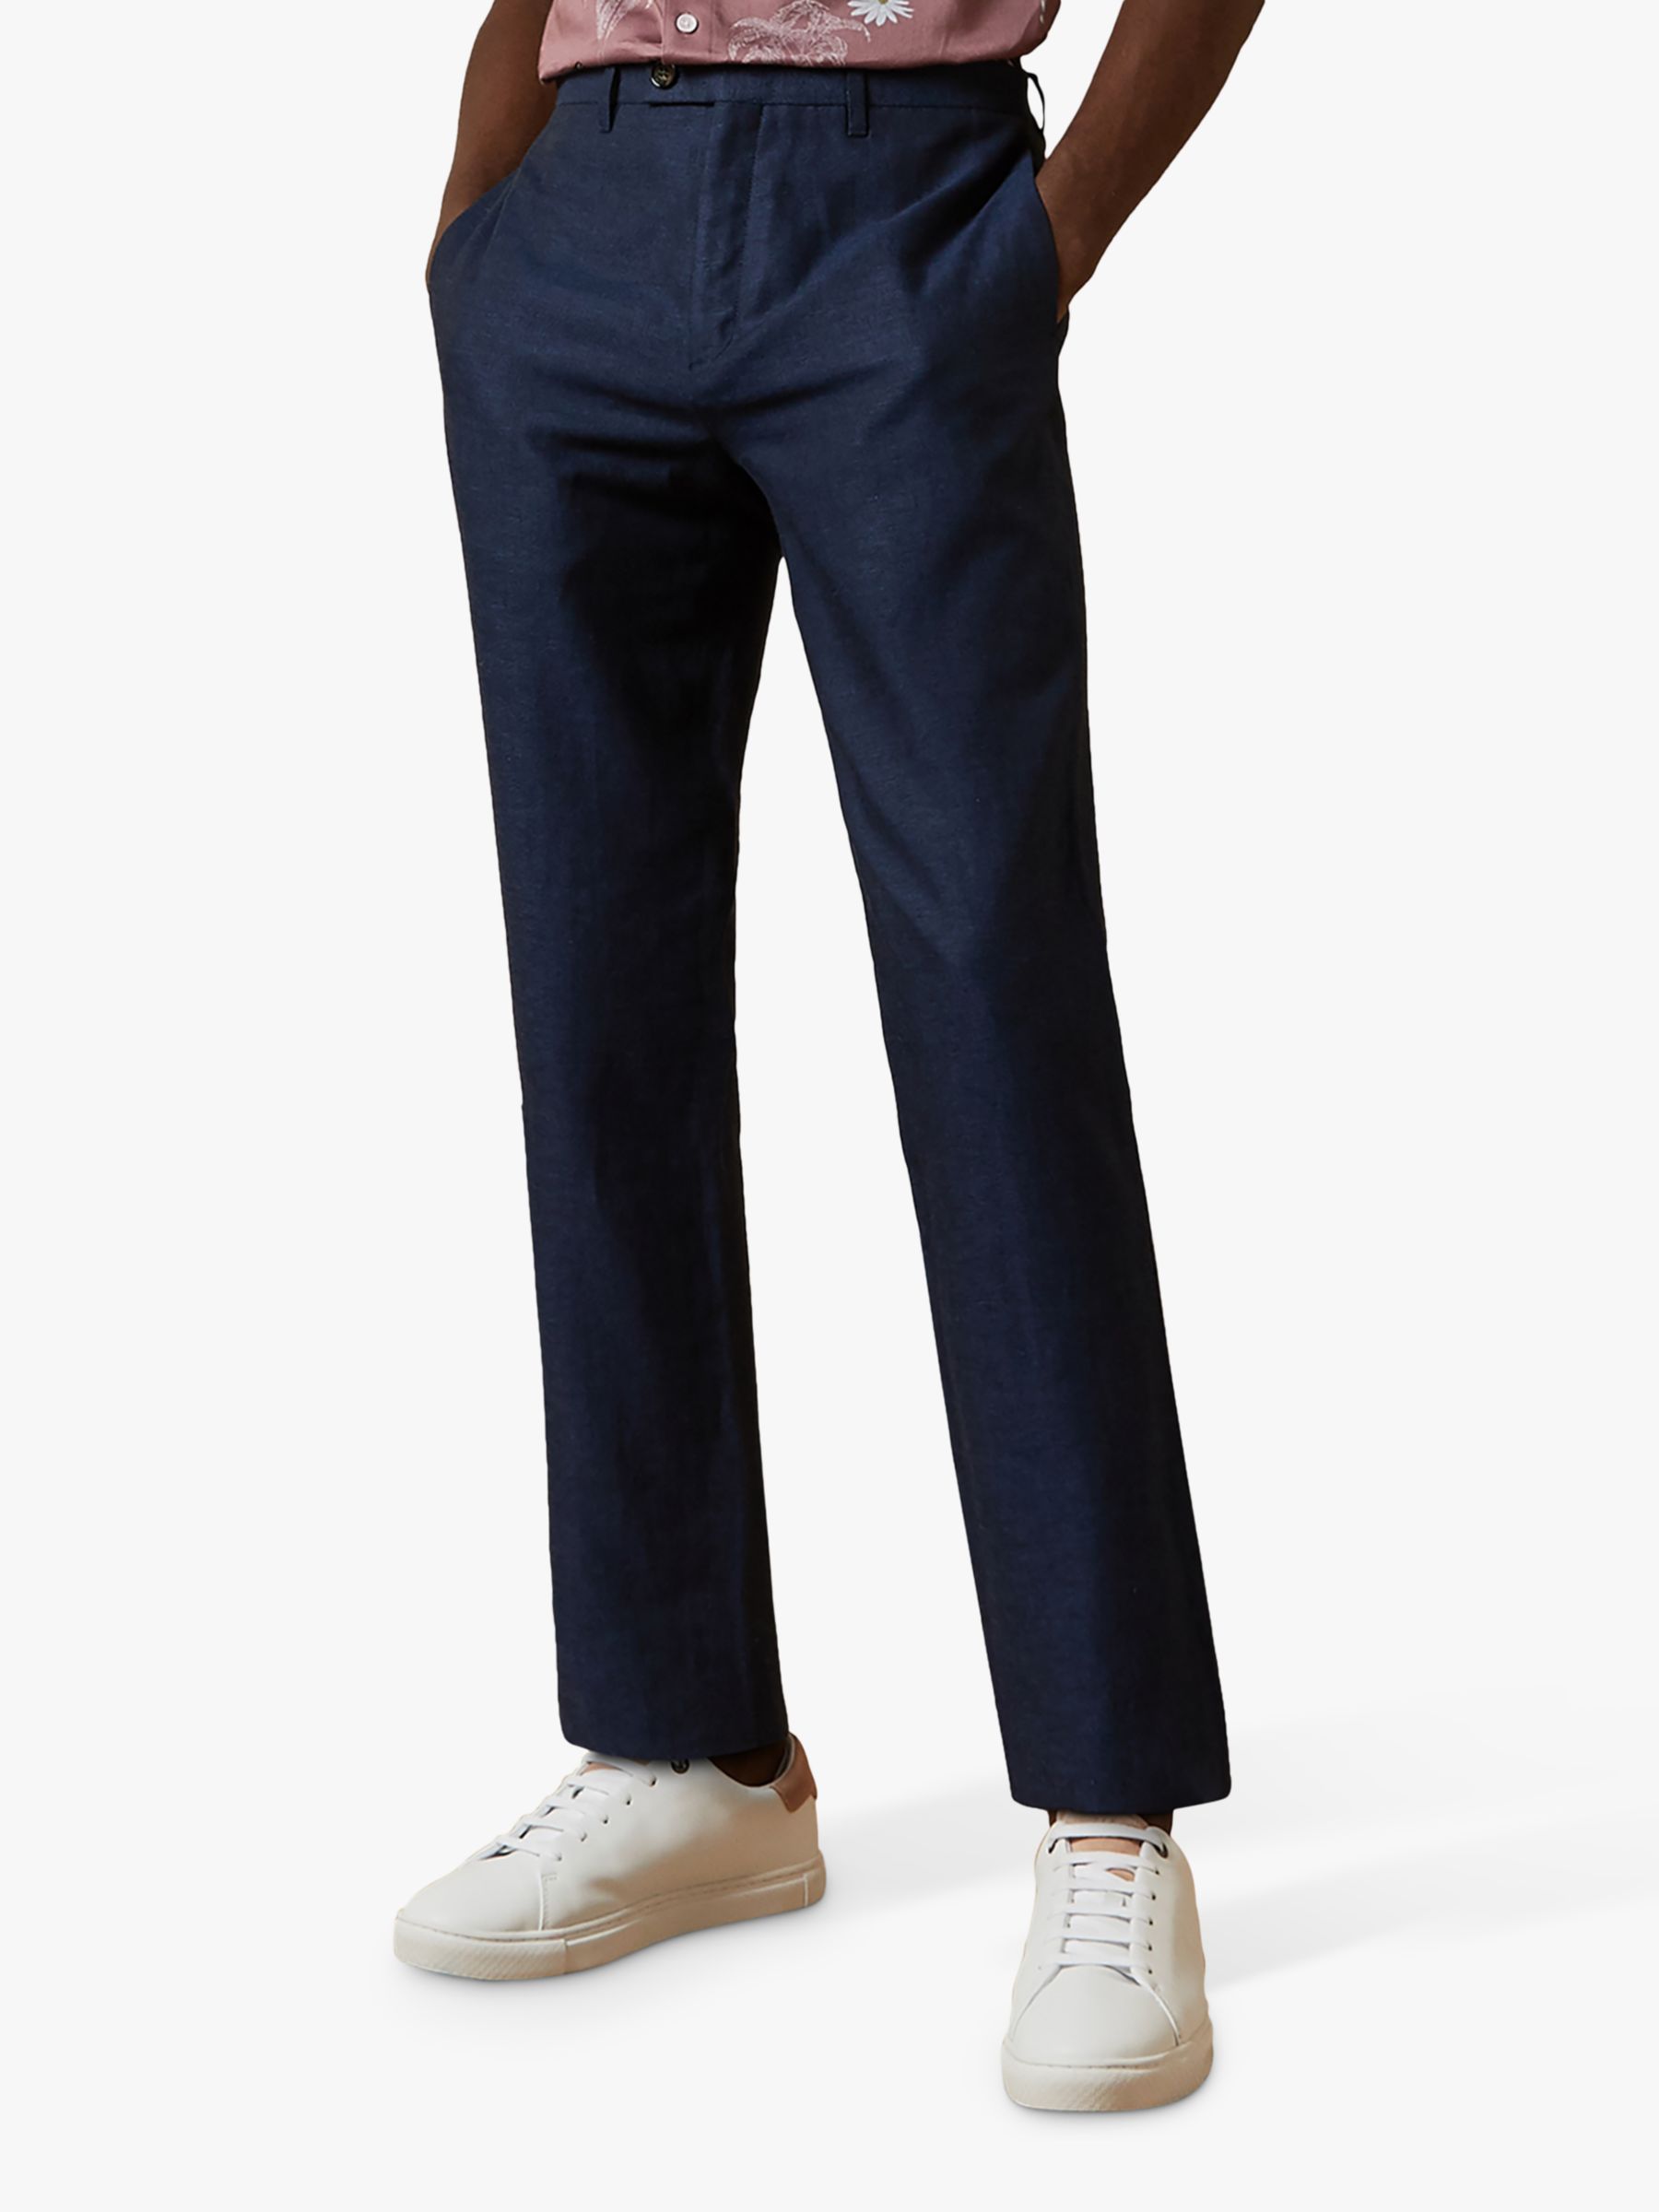 Ted Baker Hooptro Linen Blend Trousers, Navy, 36S